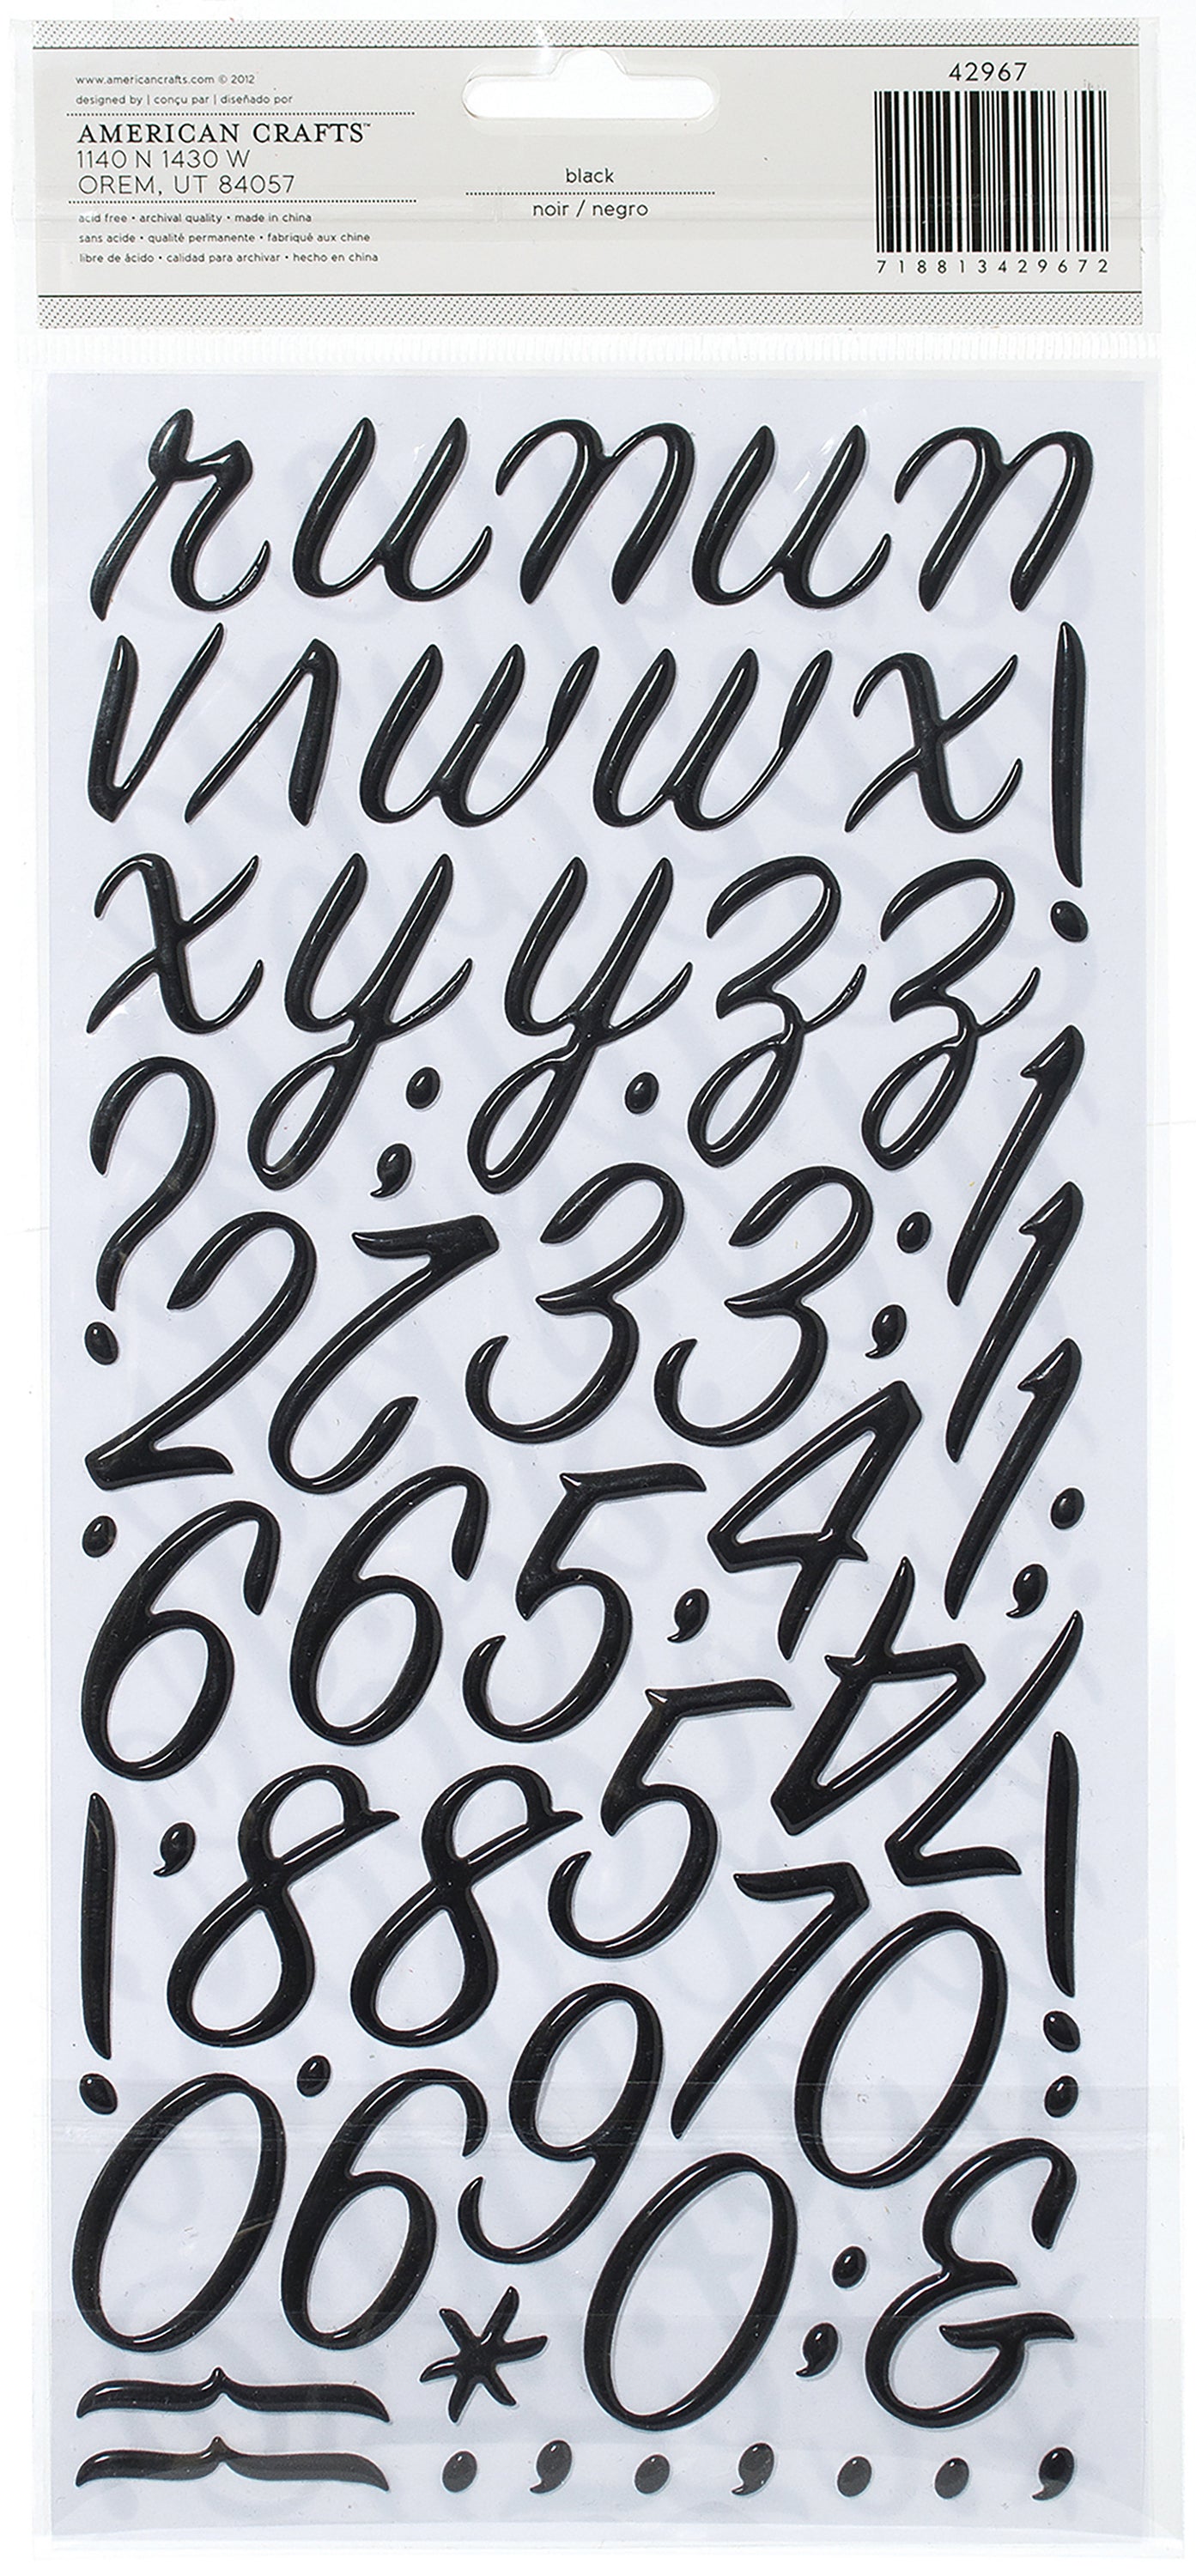 American Crafts Foil Alphabet Stickers-Rain Boots-Black, 140/Pkg